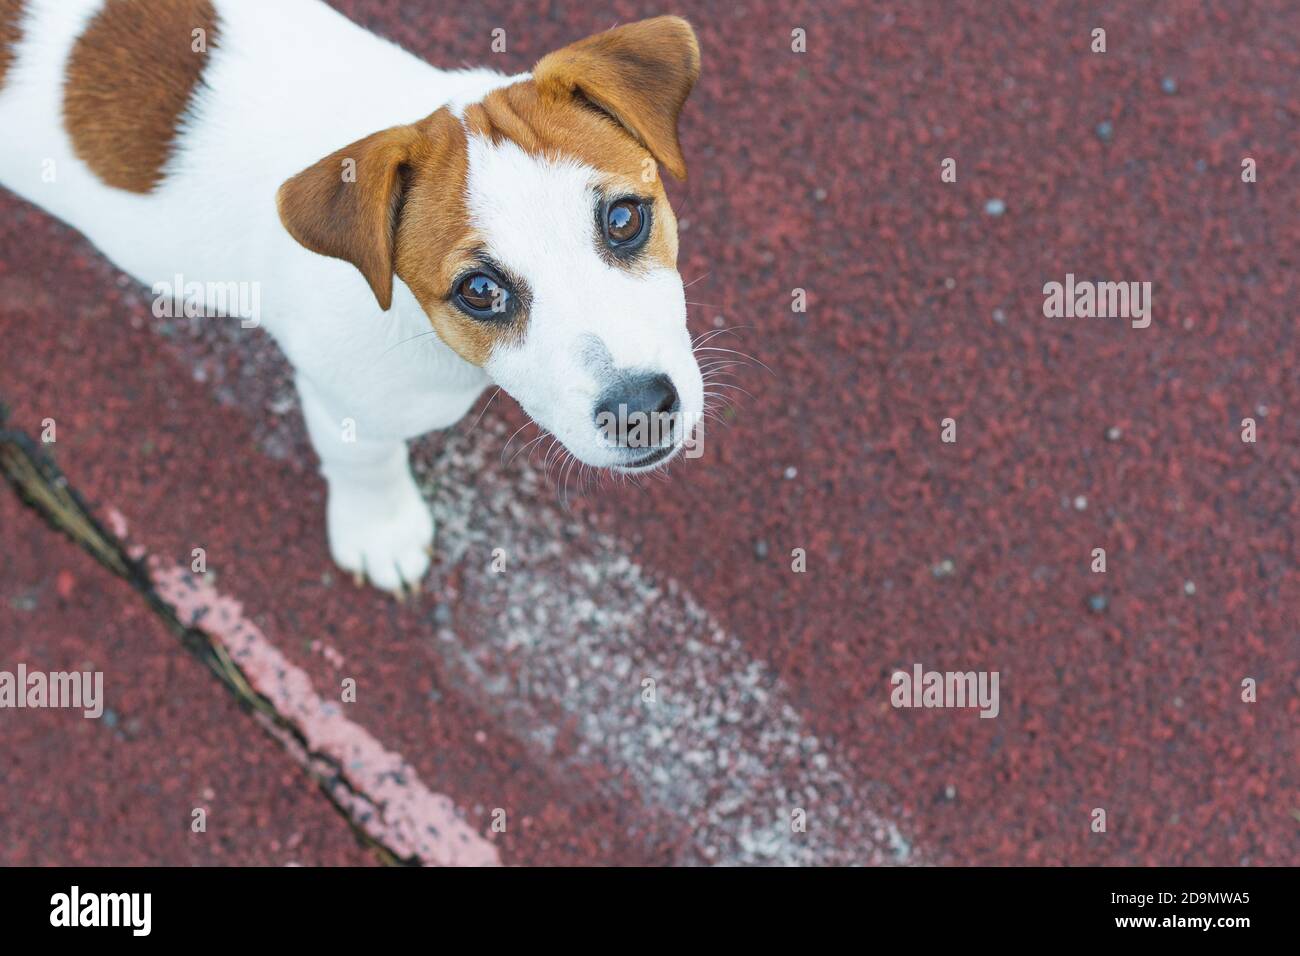 Jack Russell Terrier Welpe, weiß mit braunen runden Flecken, steht auf dem Sportboden des Spielplatzes, blickt mit braunen Augen in die Kamera. Hund Tag, P Stockfoto